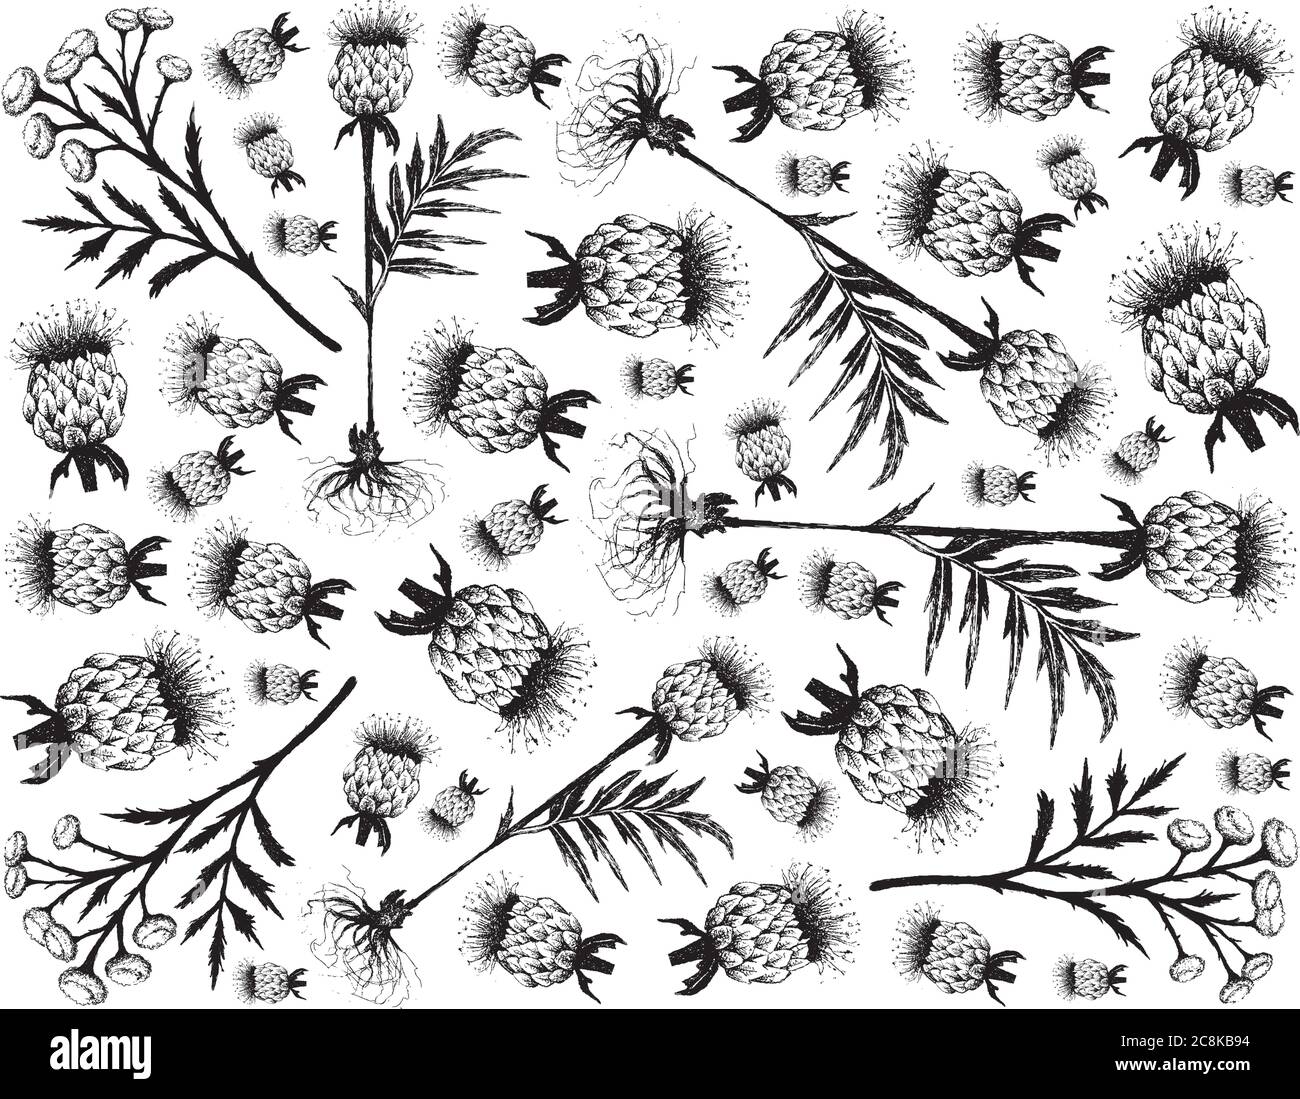 Plante et fleur de plantes, fond dessiné à la main de Tanacetum vulgare, Tansy, Cow amer ou boutons d'or fleurs et Rhaponticum Carthamoides ou Maral Illustration de Vecteur